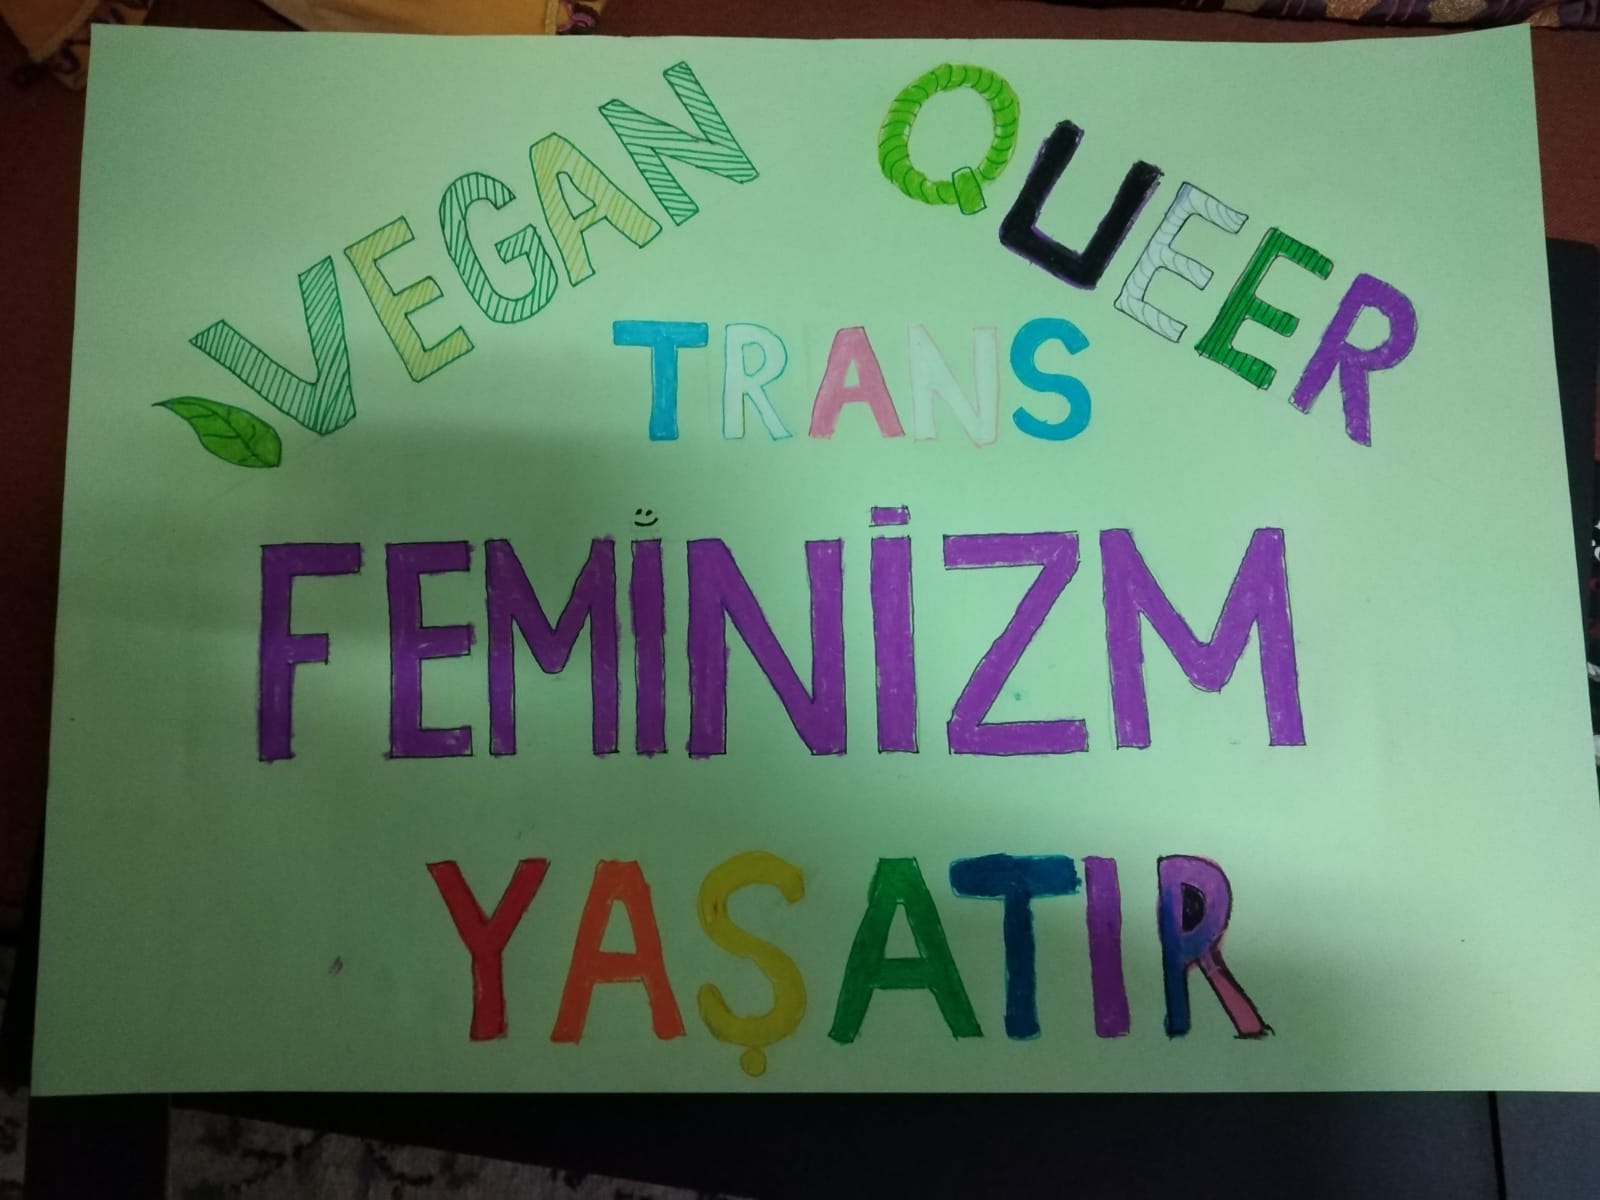 Polis Adana’da “trans feminizm” yazan dövizi mitinge almadı, gökkuşağı renginde çoraba bile sorun çıkardı! Kaos GL - LGBTİ+ Haber Portalı